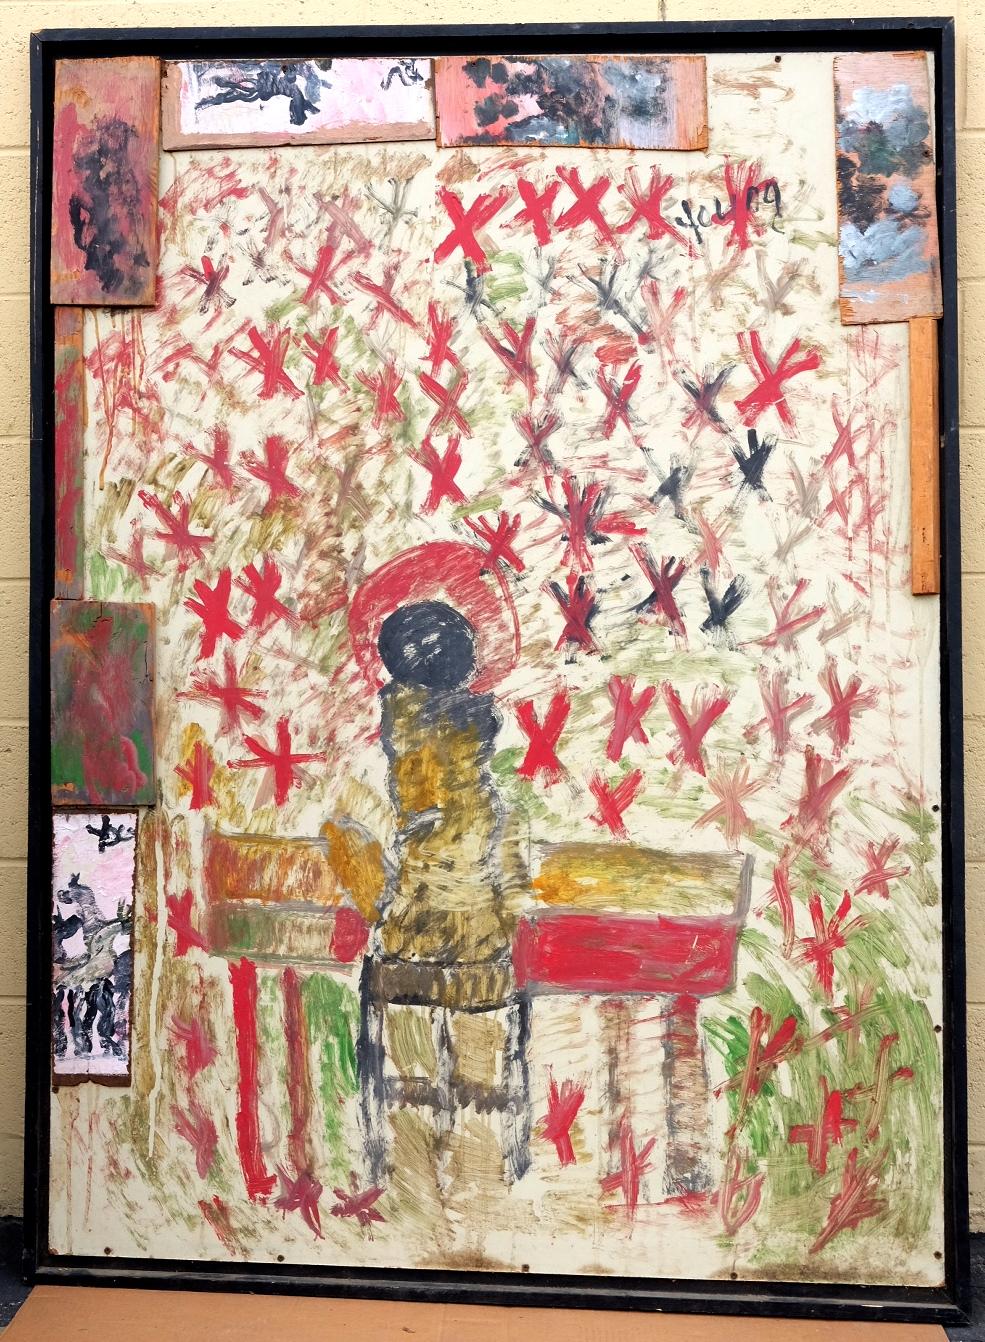 Acrylique sur bois d'un ange jouant du piano par Purvis Young. 

De l'artiste à Vanity Novelty Garden, Tamara Hendershot To Rising Fawn Folk Art, The Jimmy Hedges Collection of Outsider Art. 